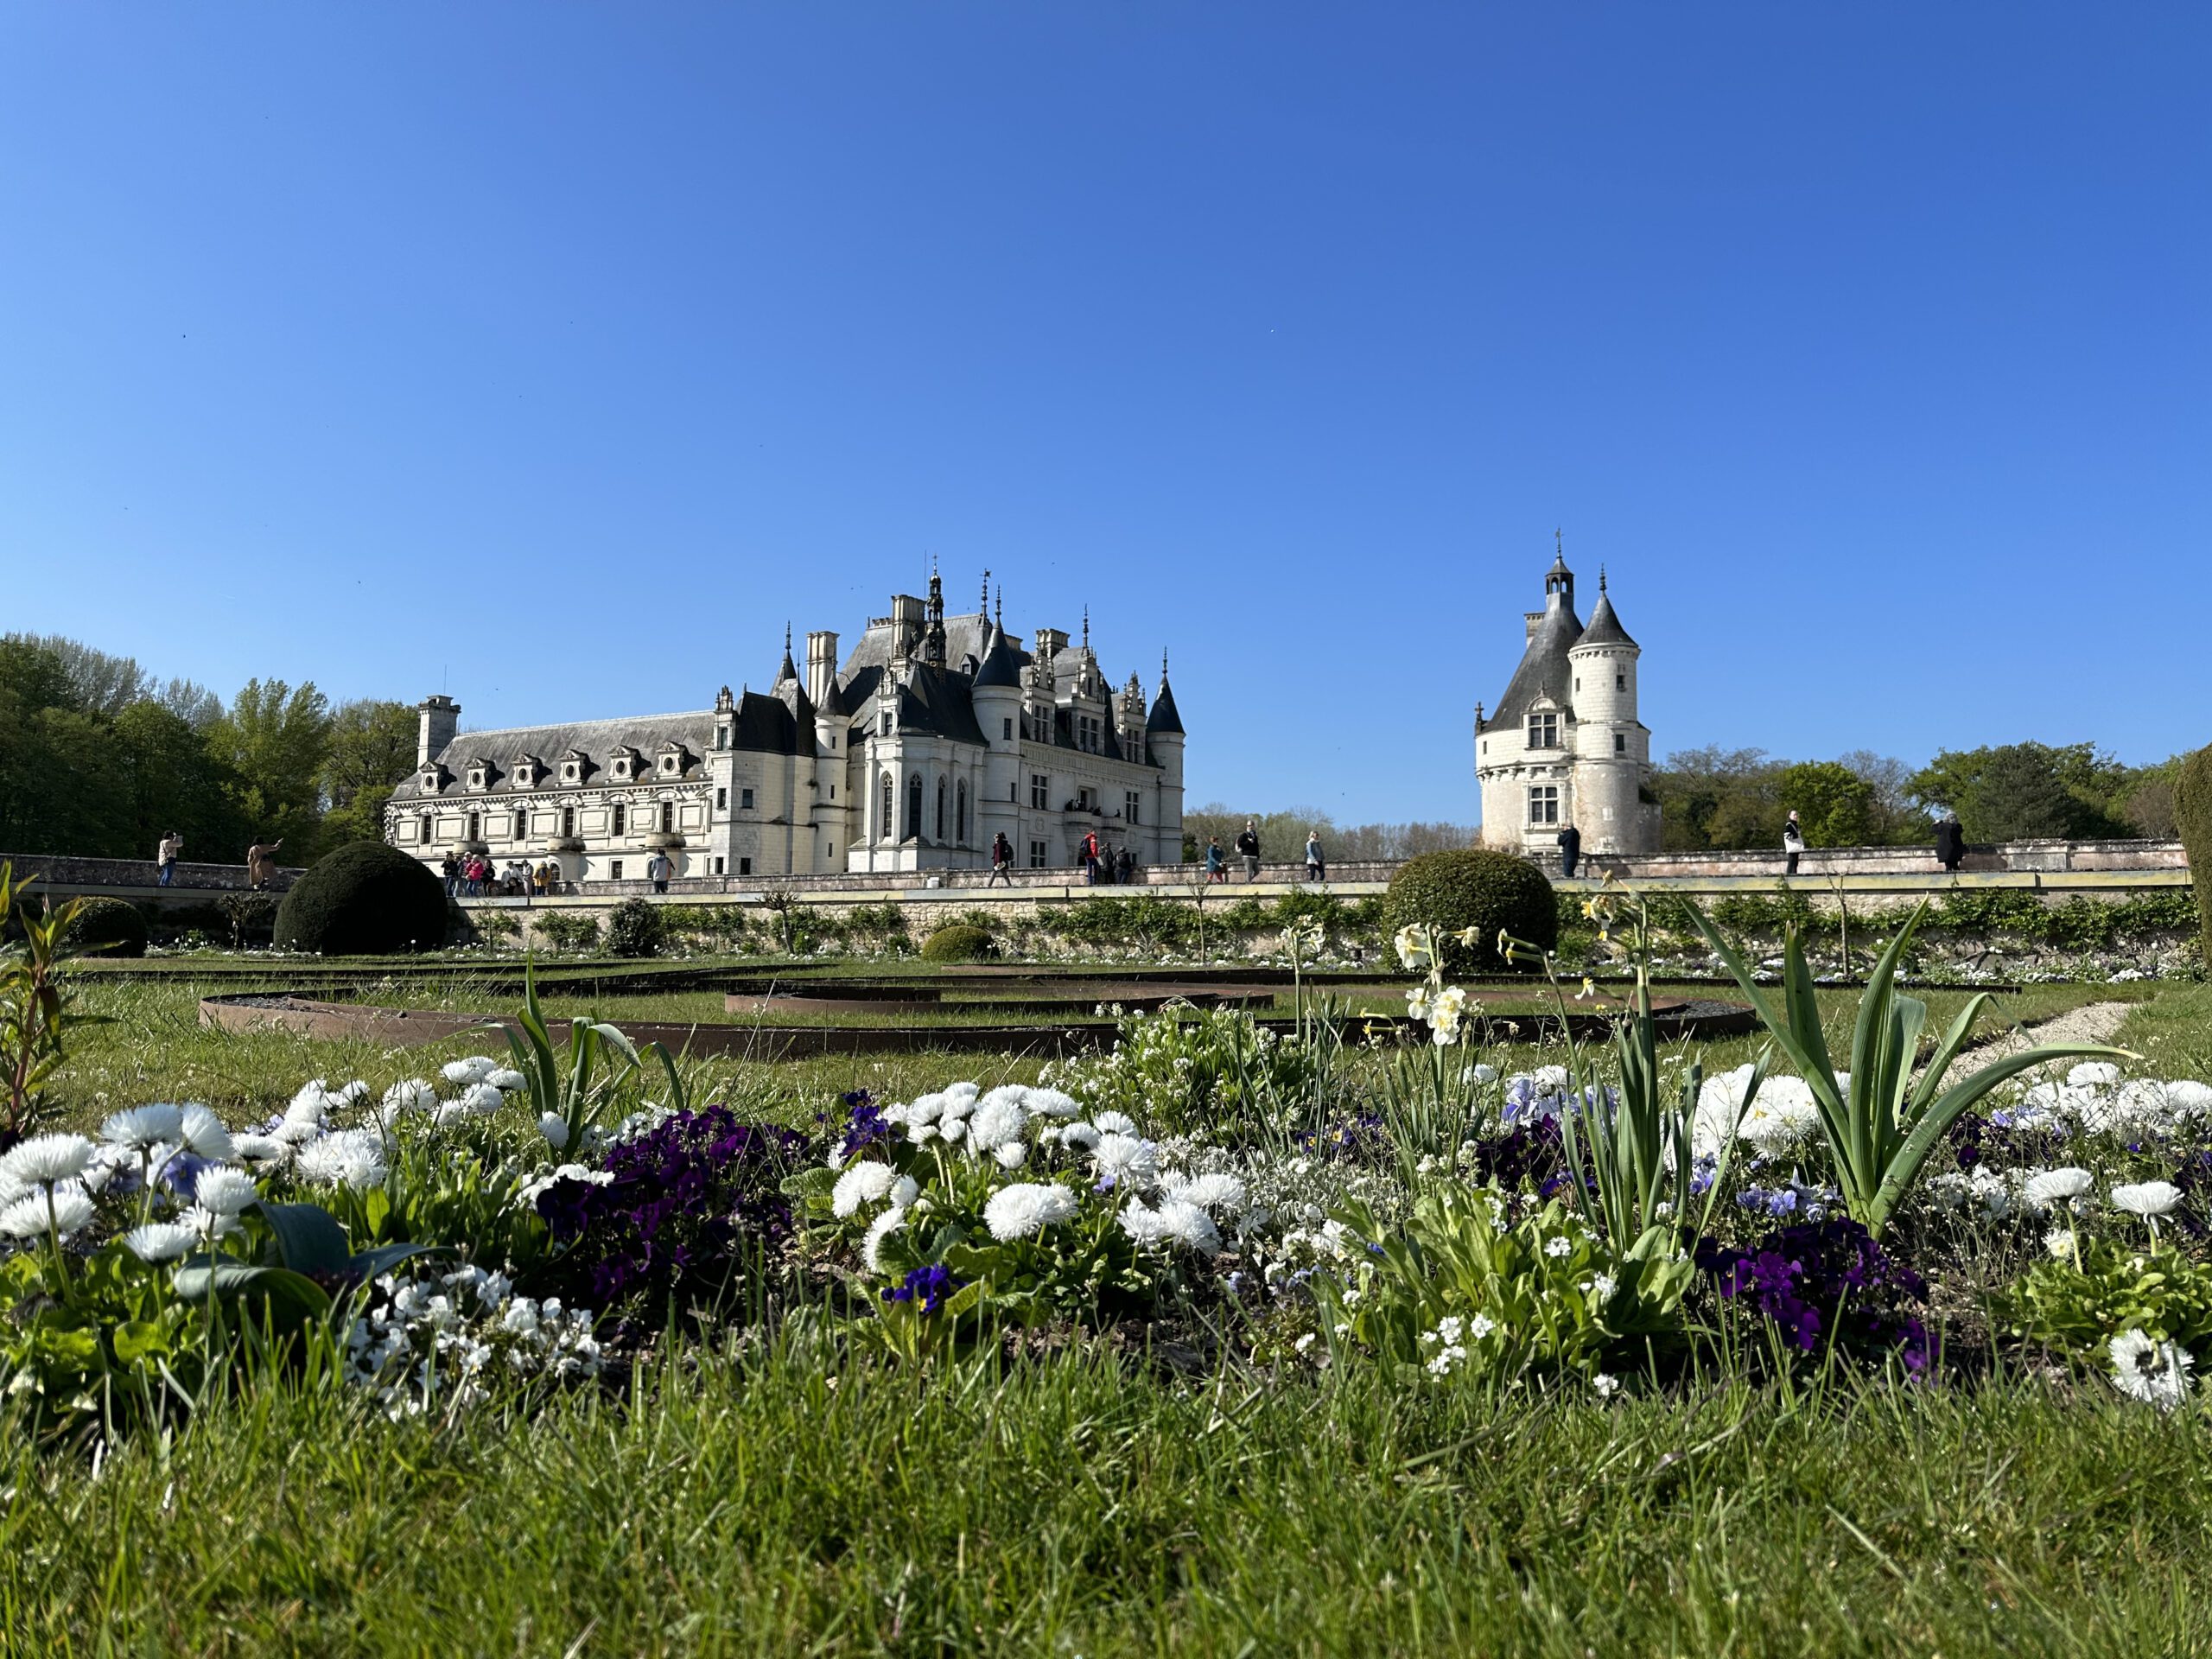 Château de Chenonceau - the Ladies' Castle